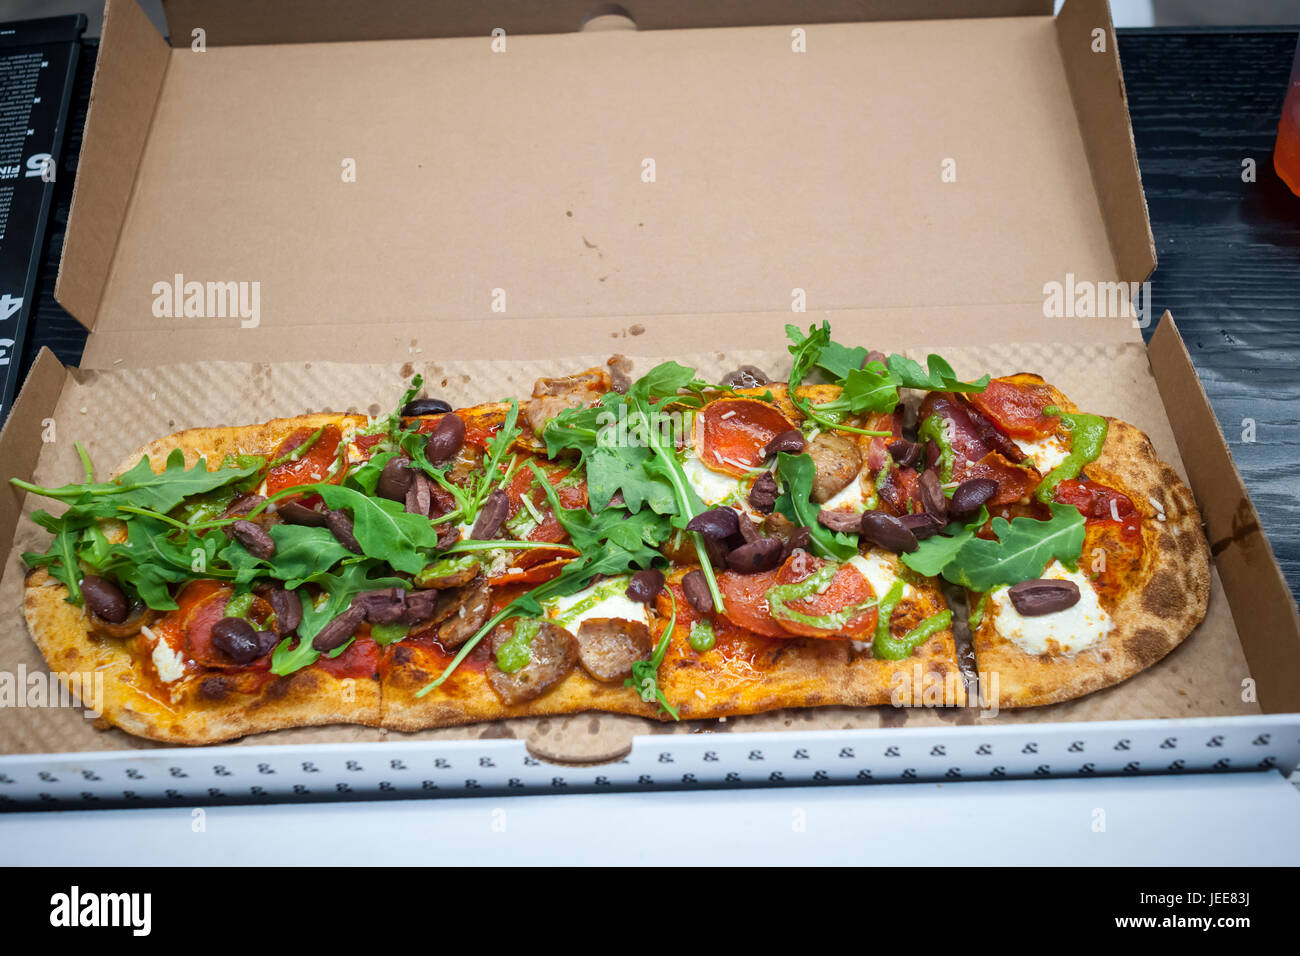 Maverick Pizza auf Eröffnung Tag der & Pizza, ihre erste New York Pizzeria am Dienstag, 20. Juni 2017. & Pizza baut seine Pizzen in gewissem Sinne Chipotle Stil mit dem Belag auf catering für Kunden individuelle Präferenzen setzen. Die 22 Ladenkette, vor allem im Bereich Washington DC bezeichnet sich selbst in einem Anti-Establishment-Restaurant mit länglich geformten kreative Kuchen, einige lokal bezogen, Zutaten und einem Hipster-Vibe mit "&" Mitarbeiter namens "Tribe" tätowiert.  (© Richard B. Levine) Stockfoto